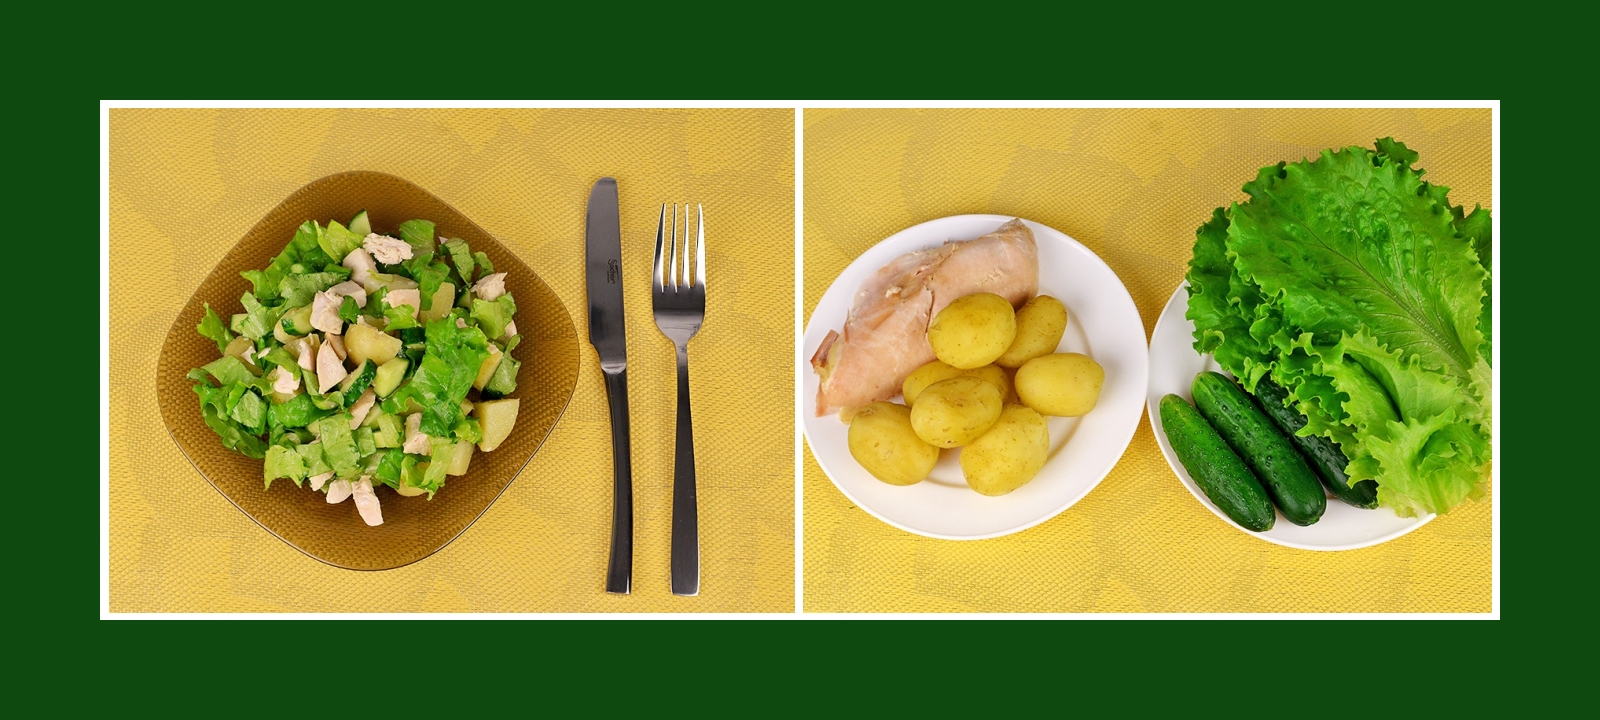 Zarter Kartoffelsalat mit Hähnchenbrustfilet, Gurken und knusprigen Salatblättern